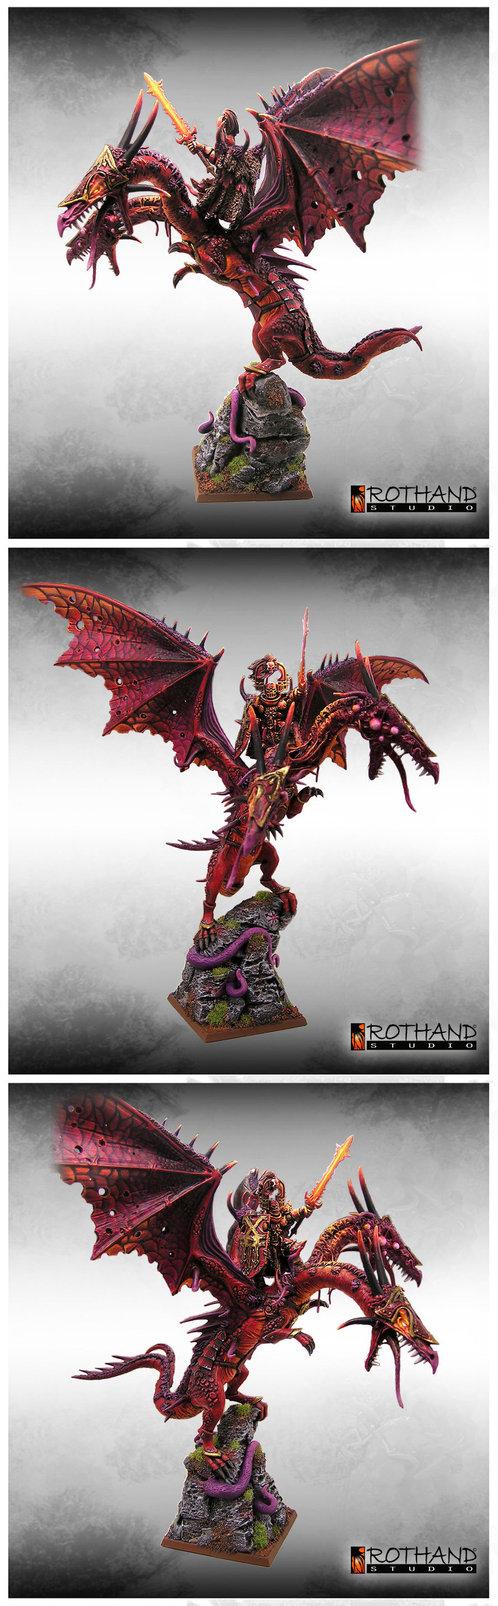 Warhammer Chaos Lord Dragon Conversion